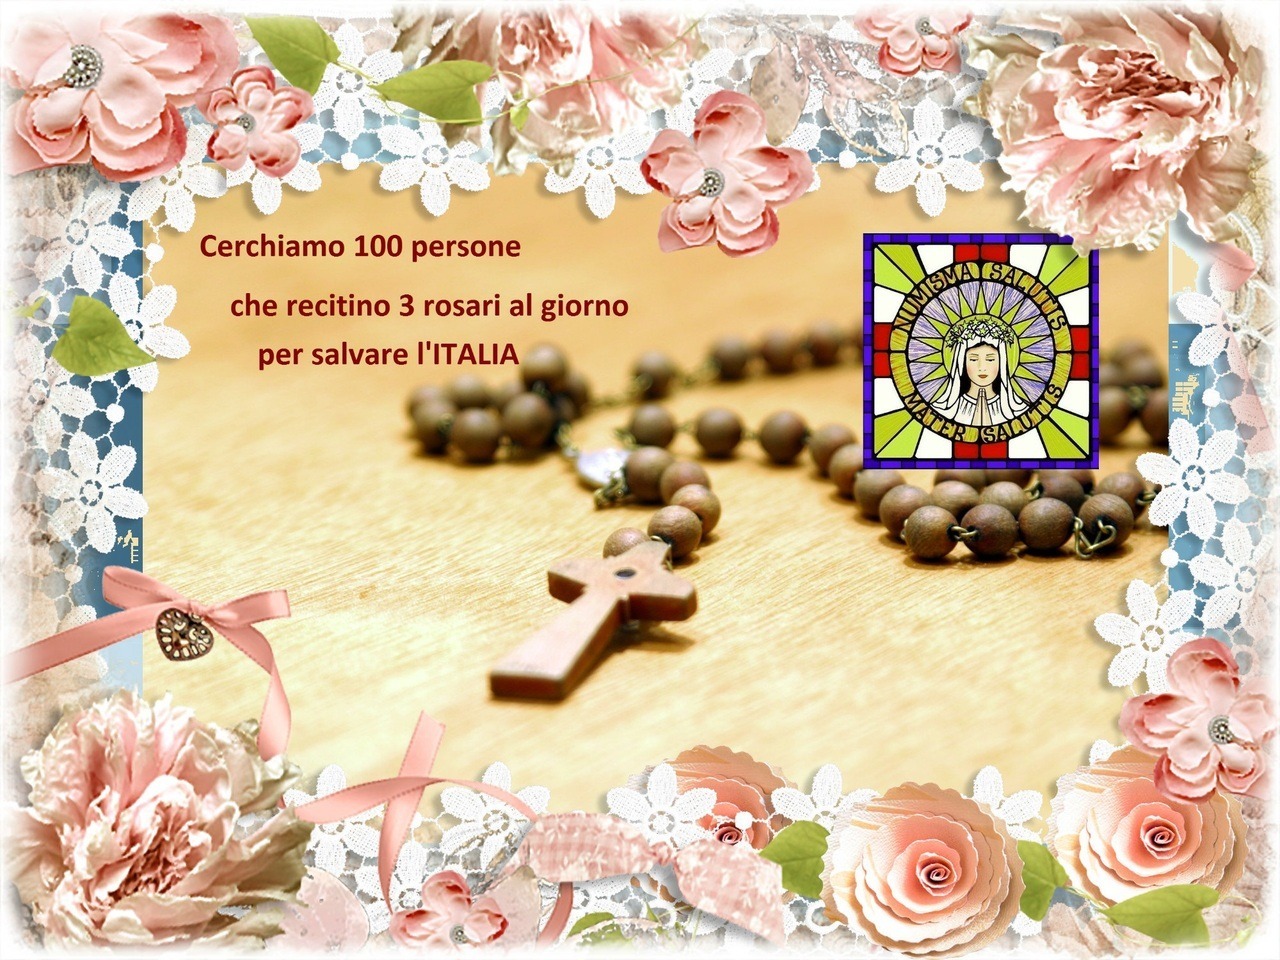 █ ♥*  Cerchiamo 100 persone che recitino 3 rosari al giorno per salvare l'Italia Facci sapere se tu lo farai per contare le persone che si sono unite.  gesuallumanitaitalia@yahoo.it
Vorremmo sapere il numero effettivo delle persone che lo stanno...